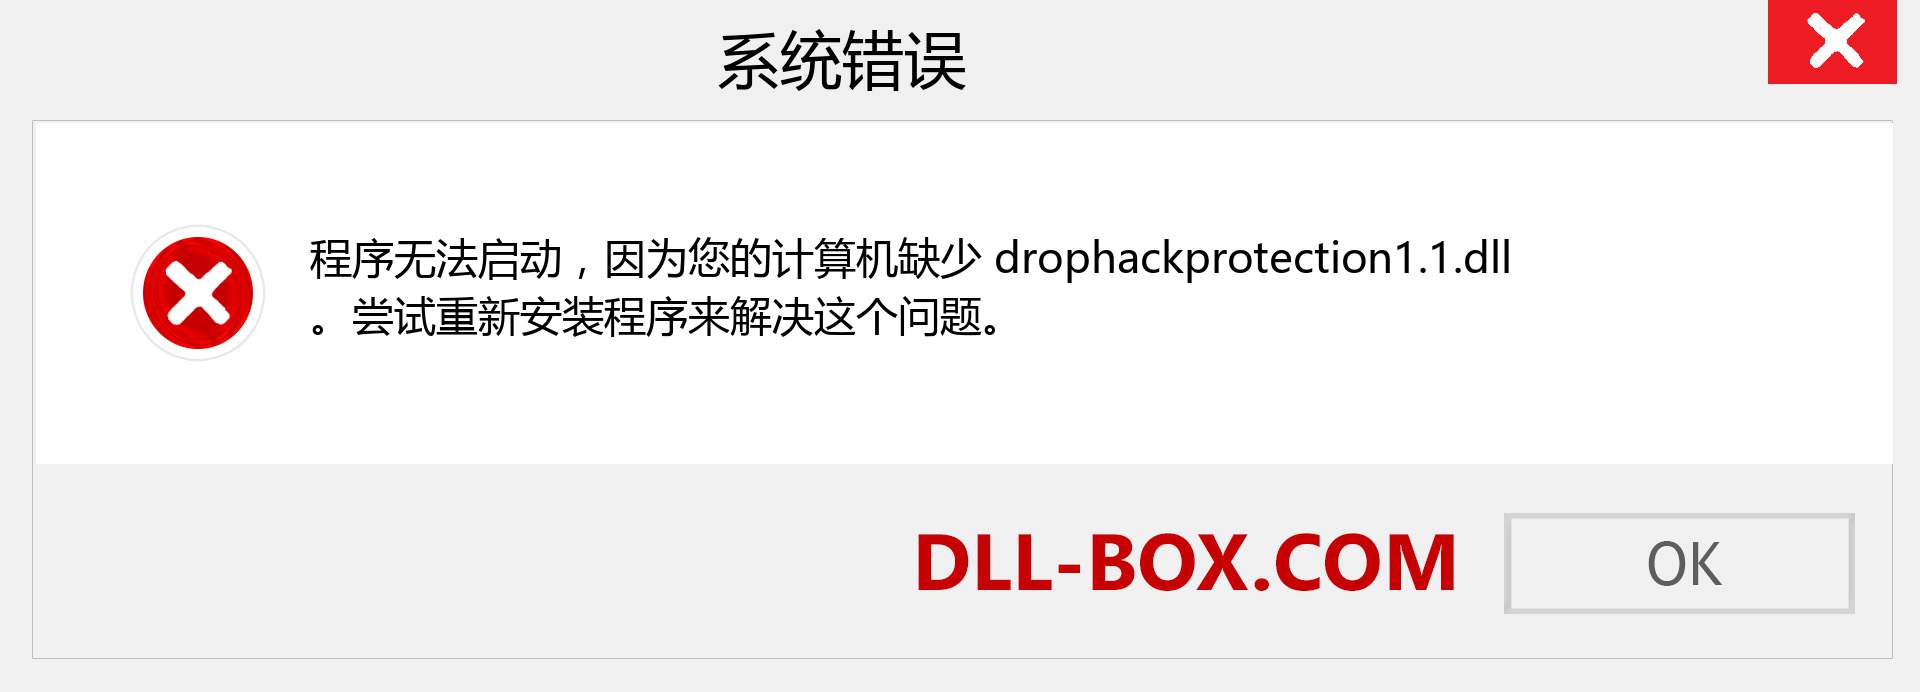 drophackprotection1.1.dll 文件丢失？。 适用于 Windows 7、8、10 的下载 - 修复 Windows、照片、图像上的 drophackprotection1.1 dll 丢失错误